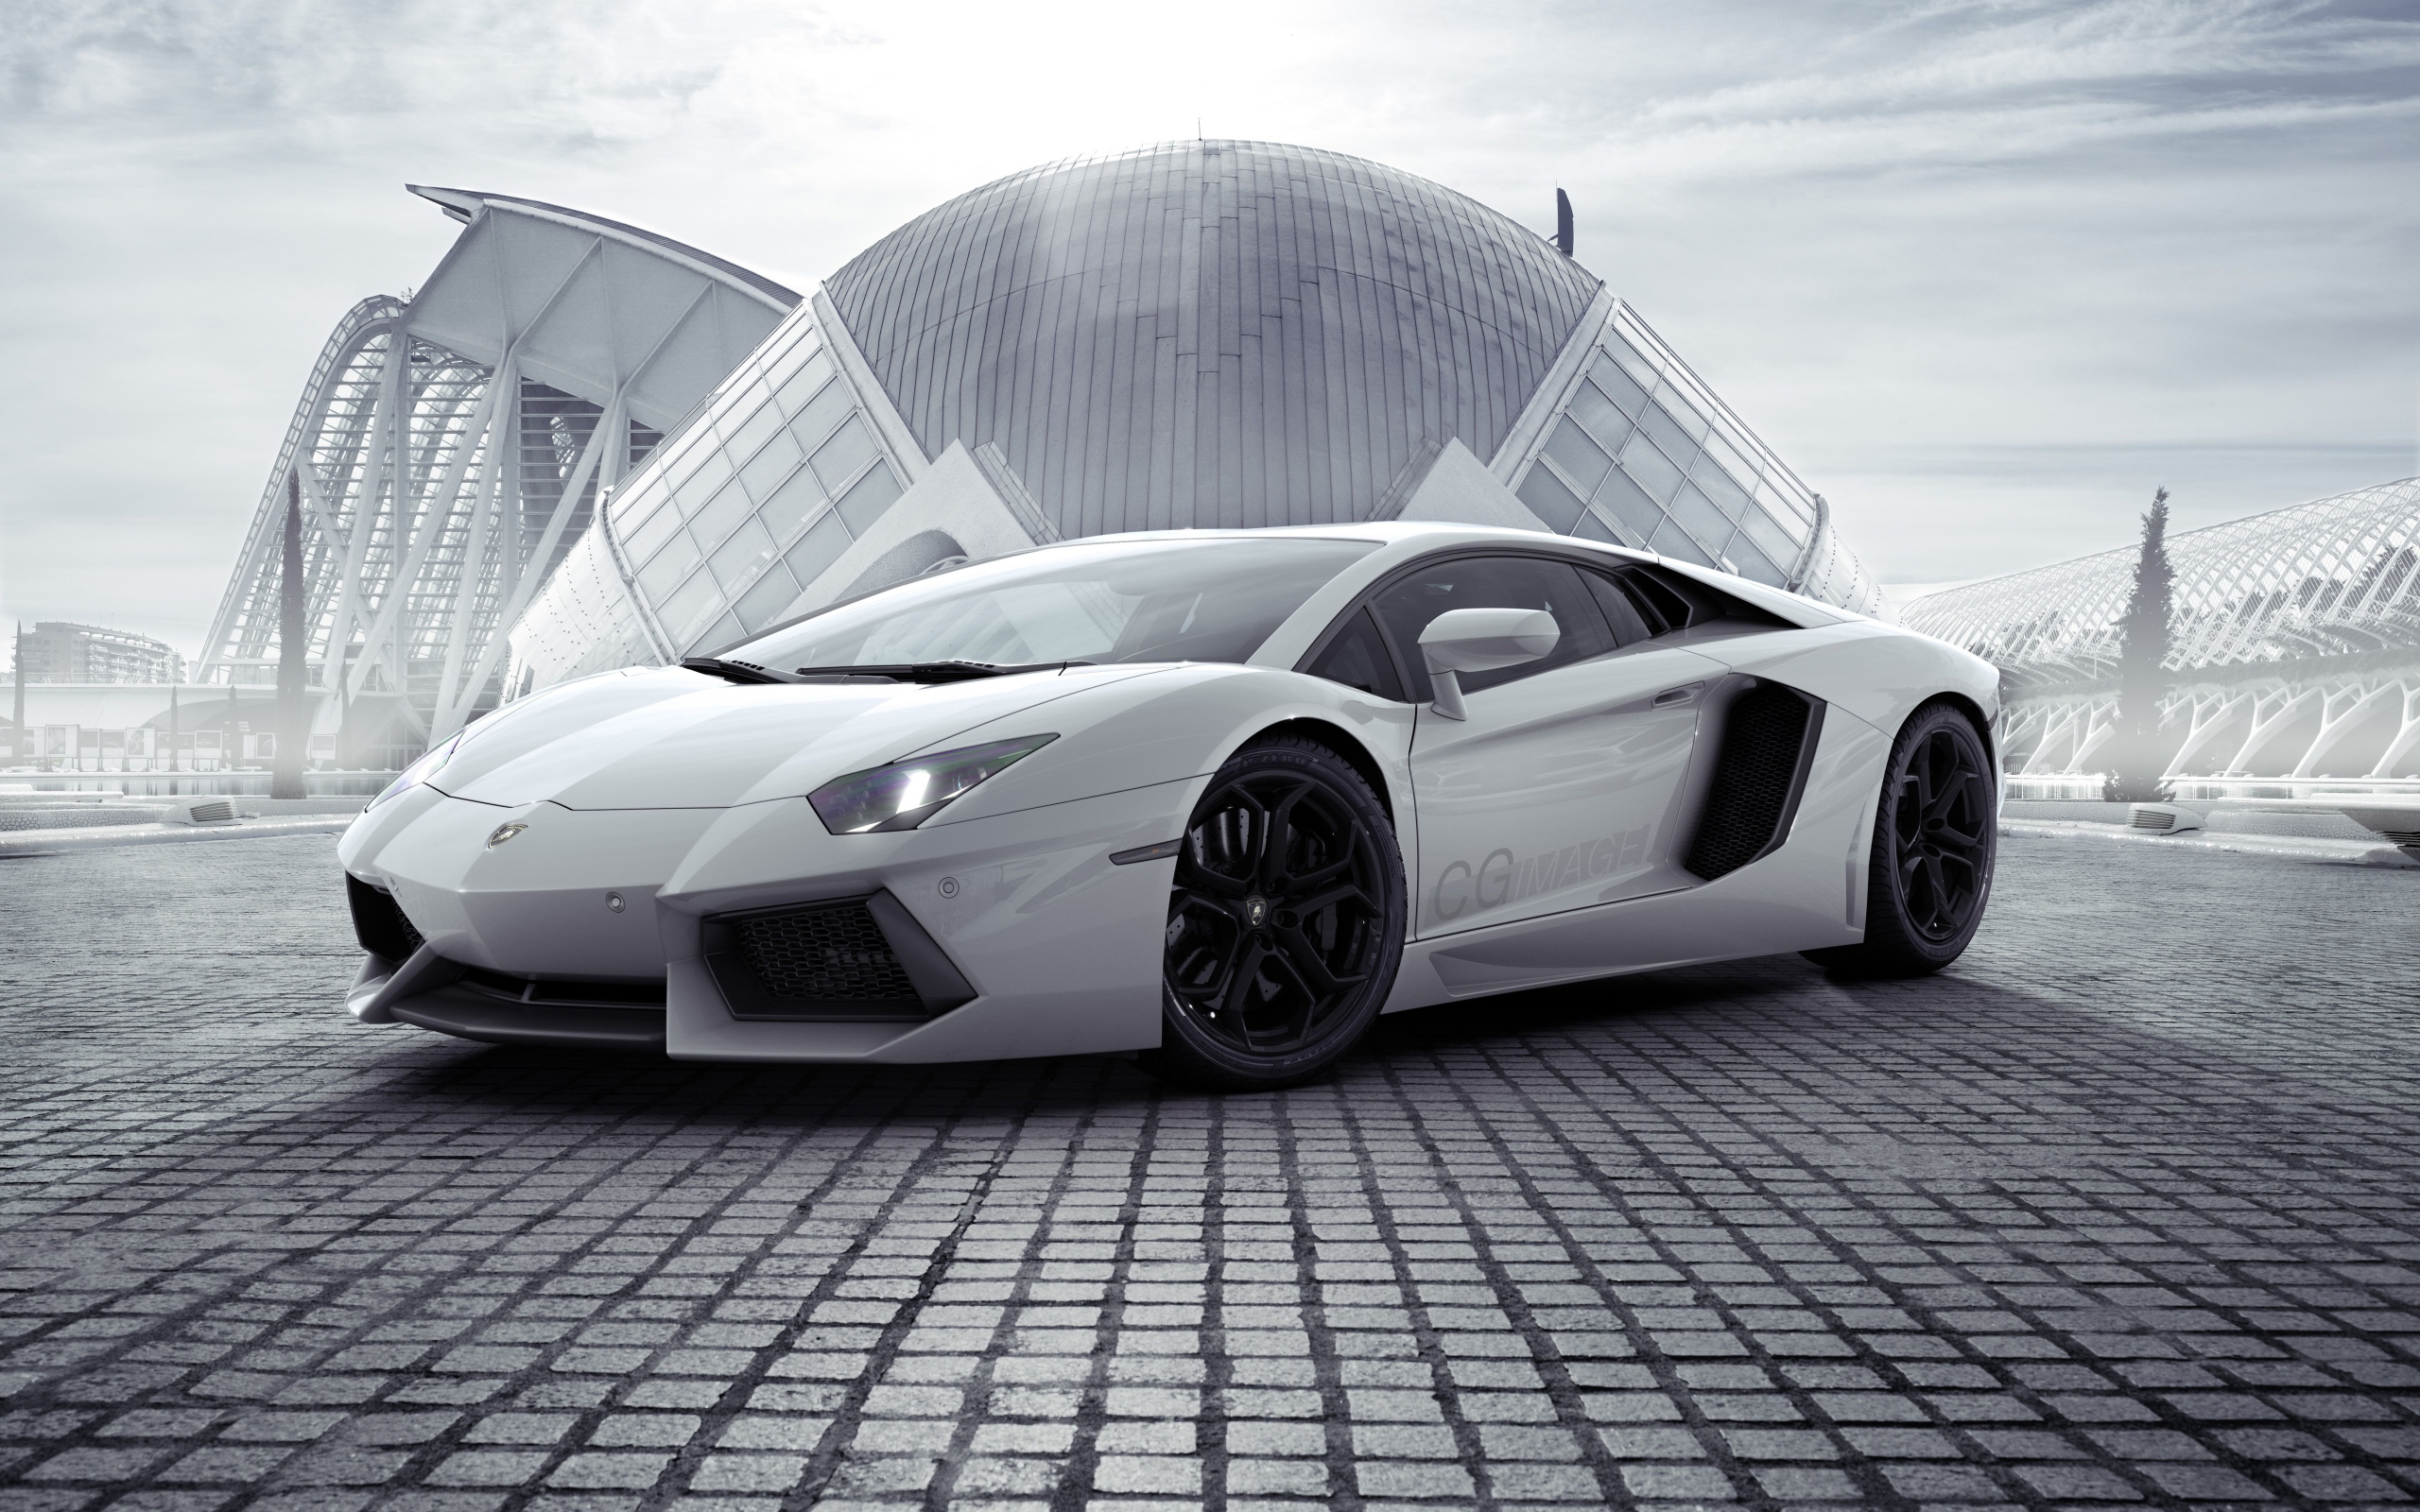 Спортивный серебристый автомобиль Lamborghini Aventador напротив здания